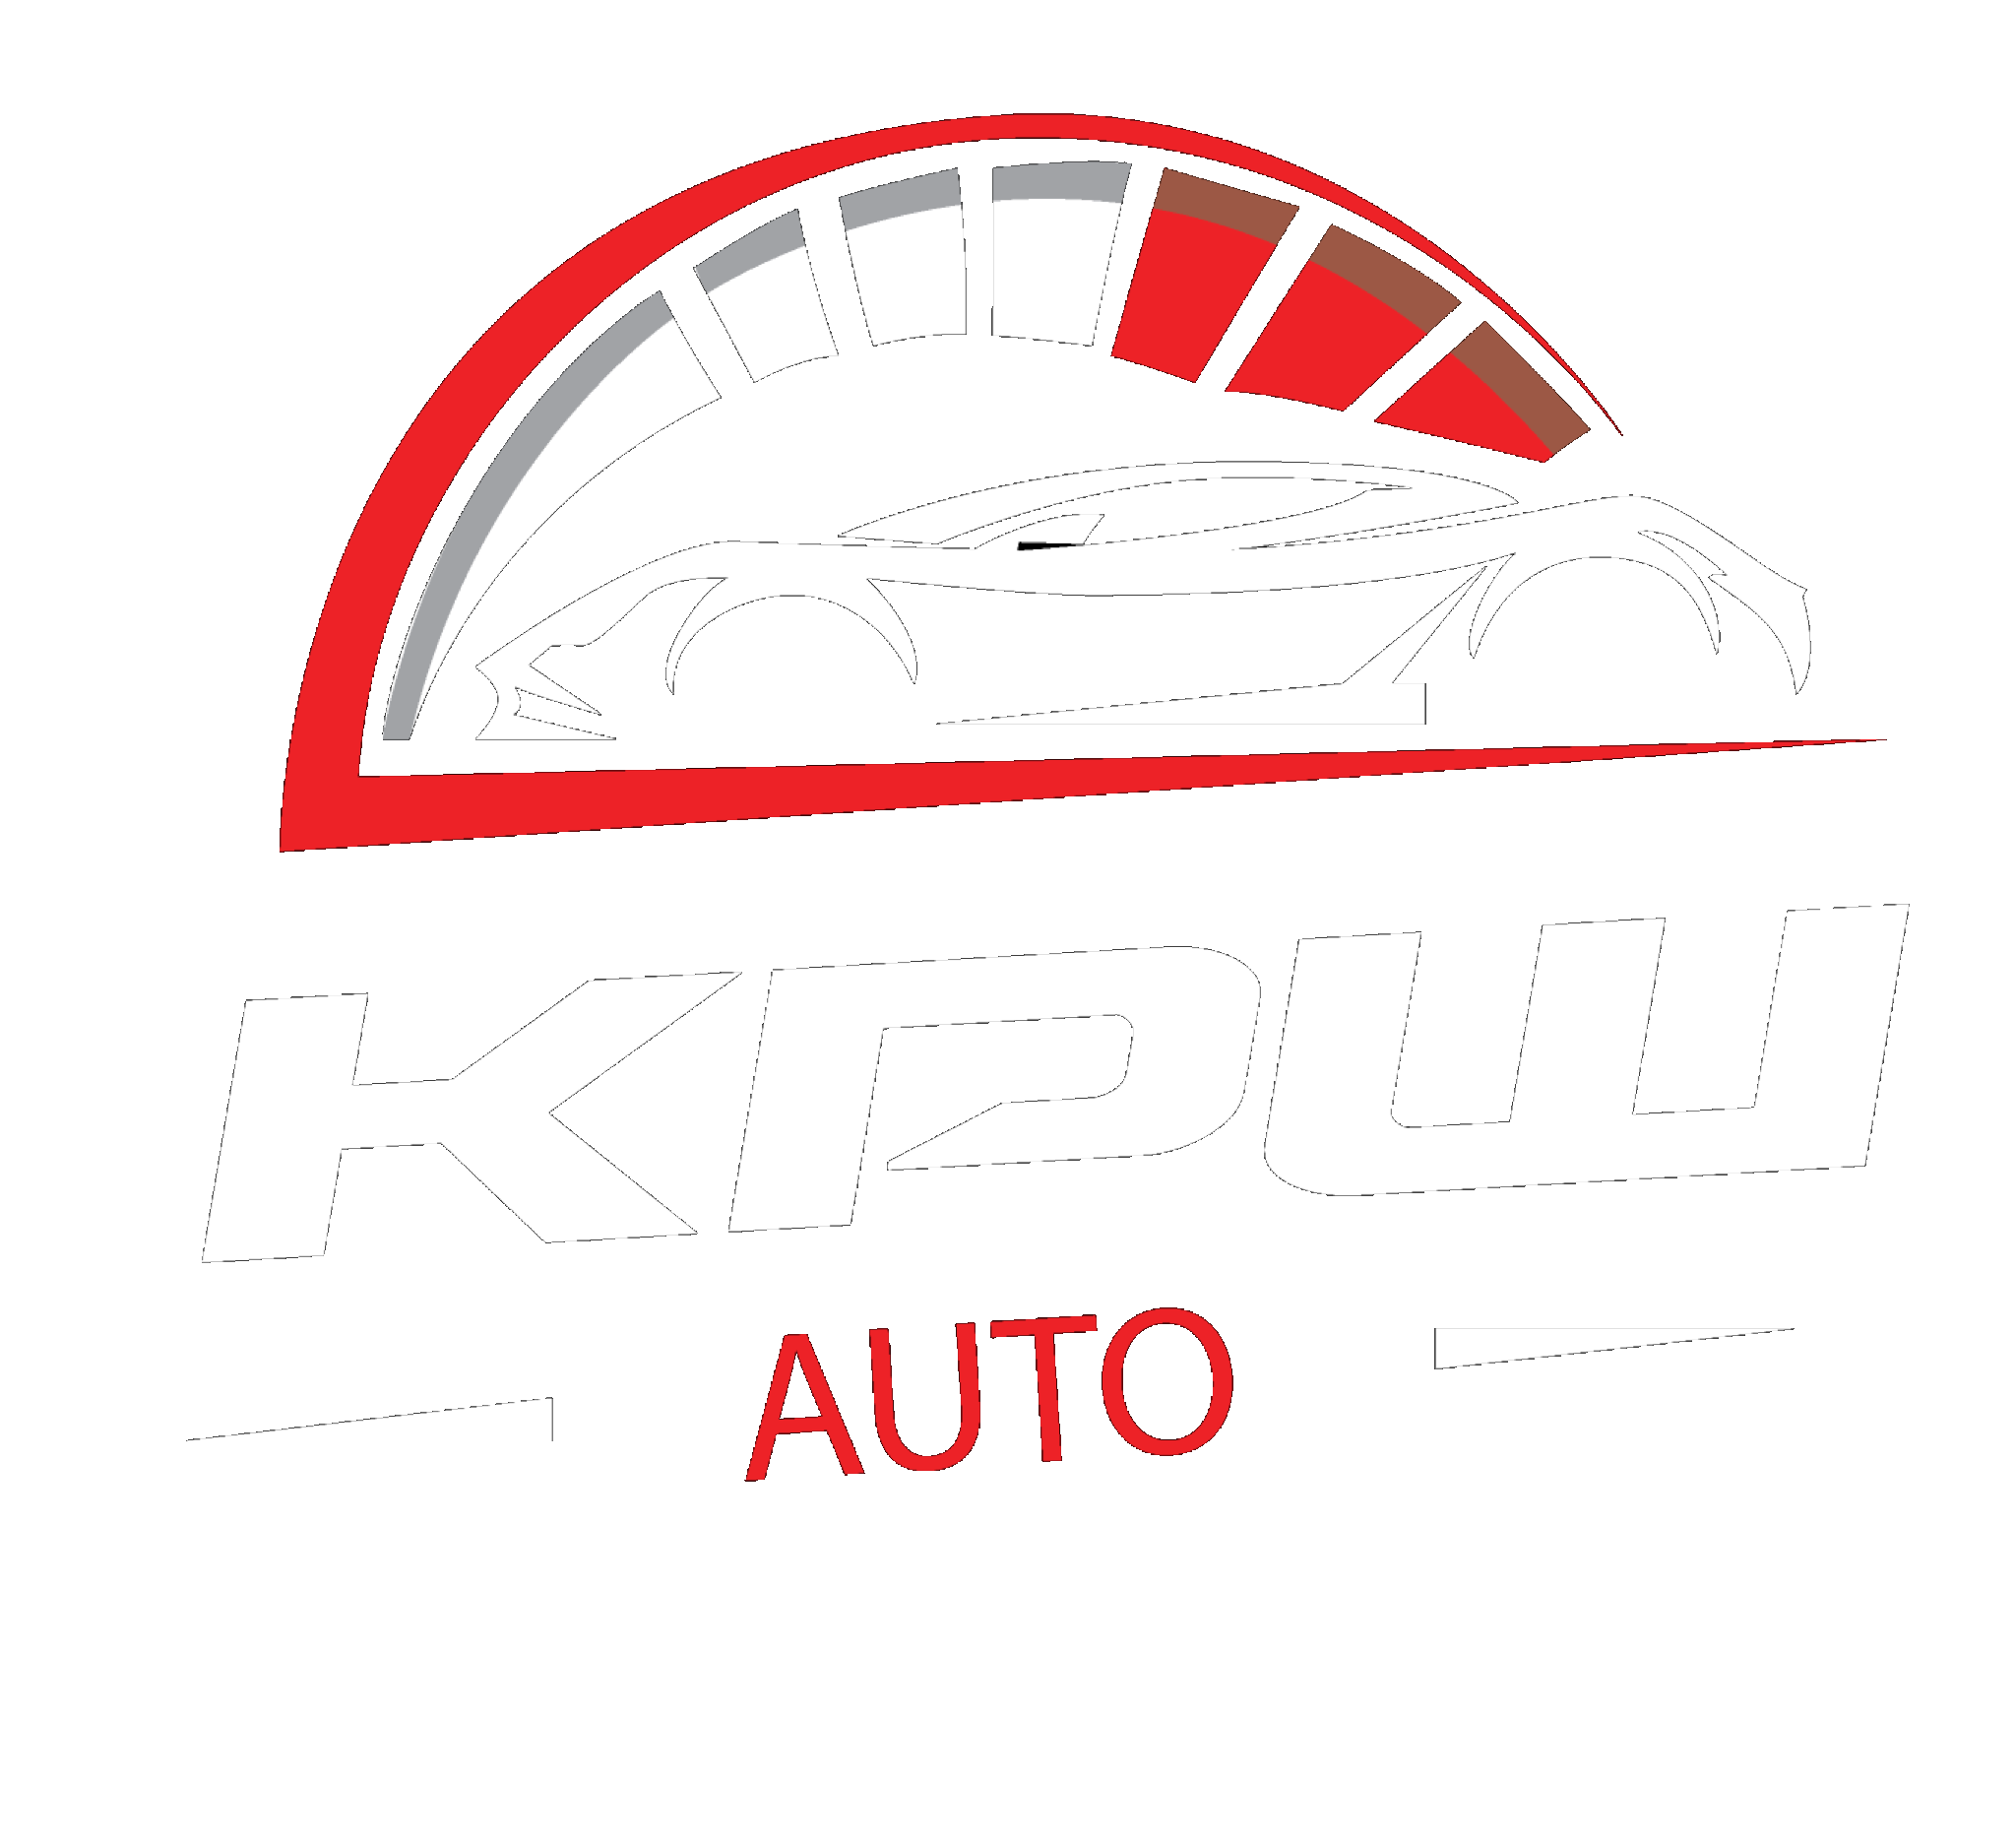 KPW Auto